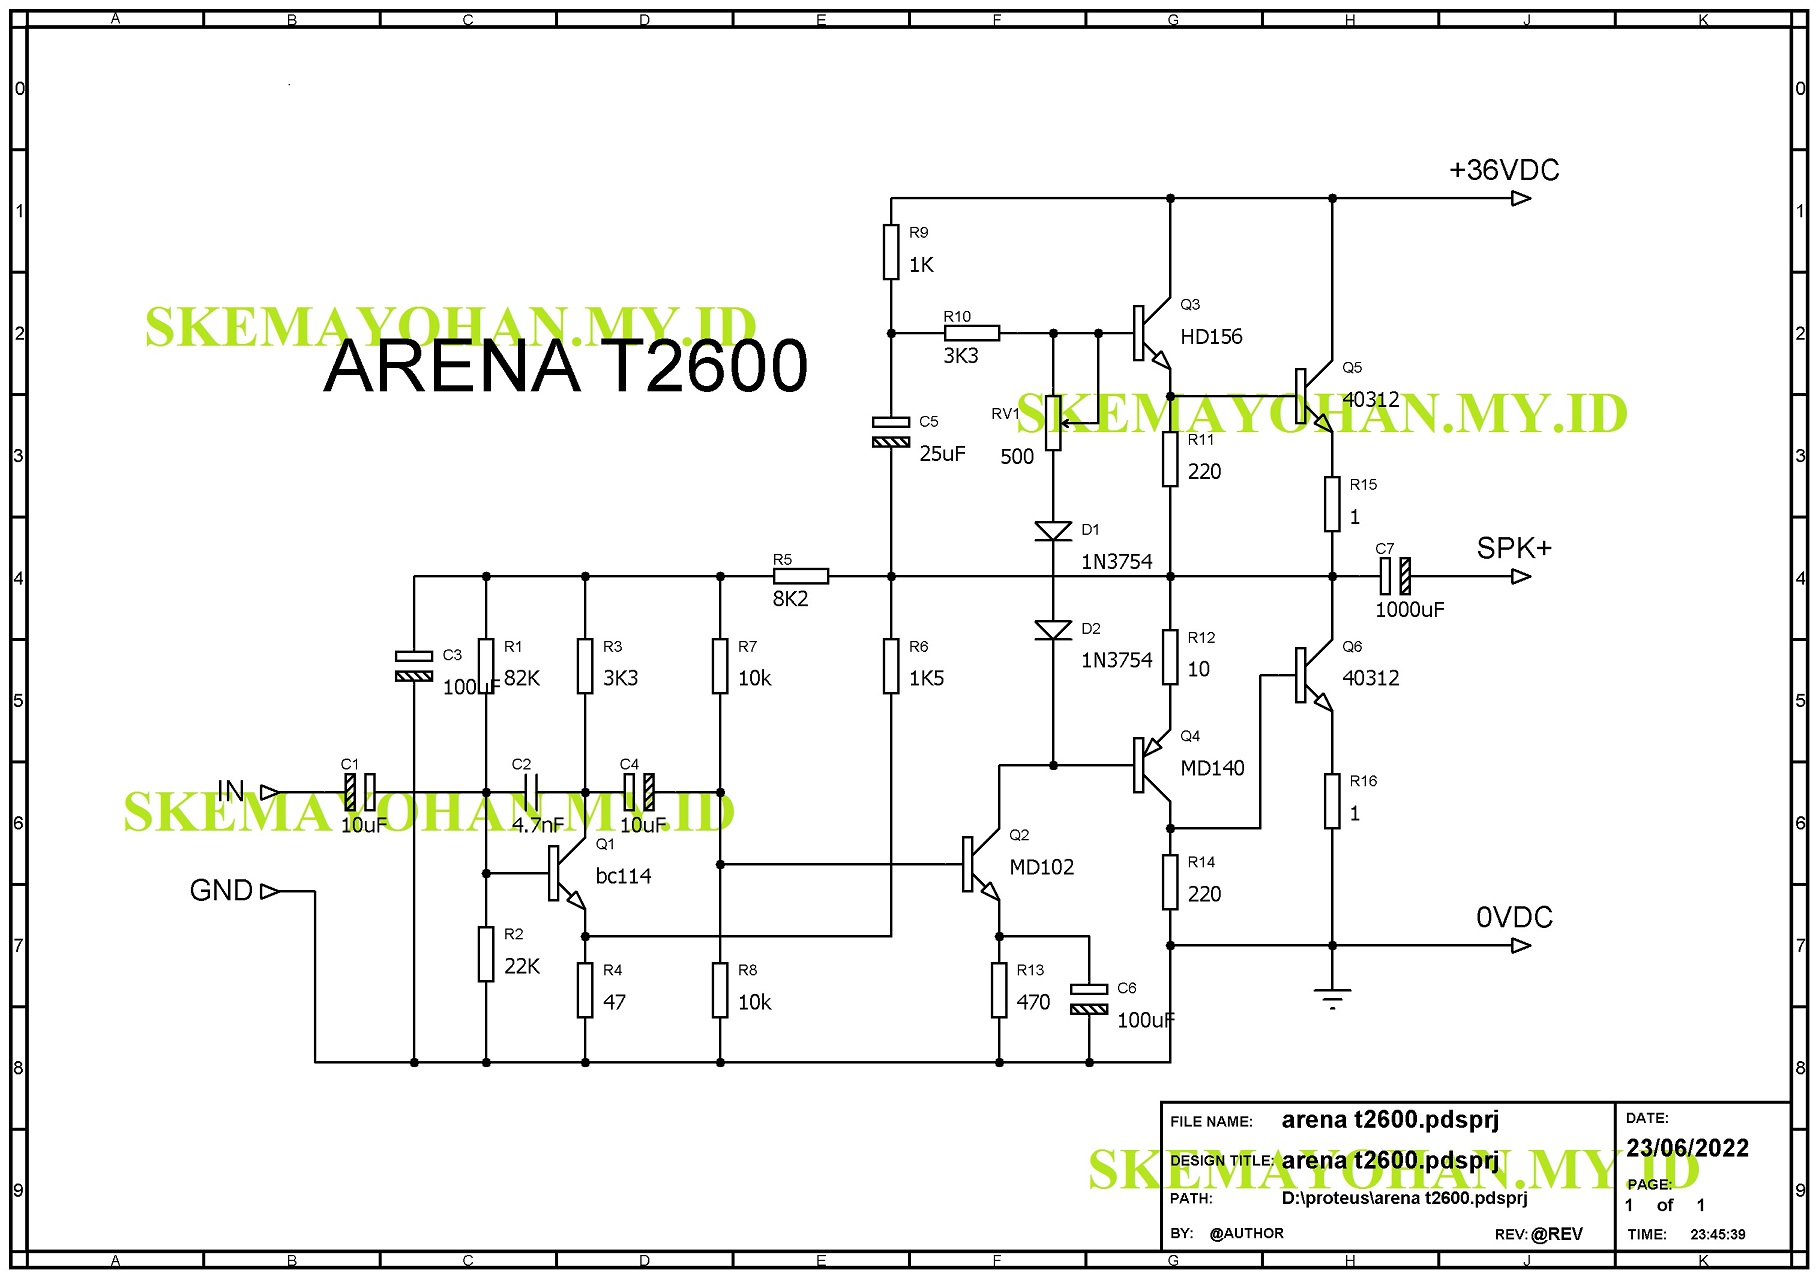 power amplifier ARENA T2600